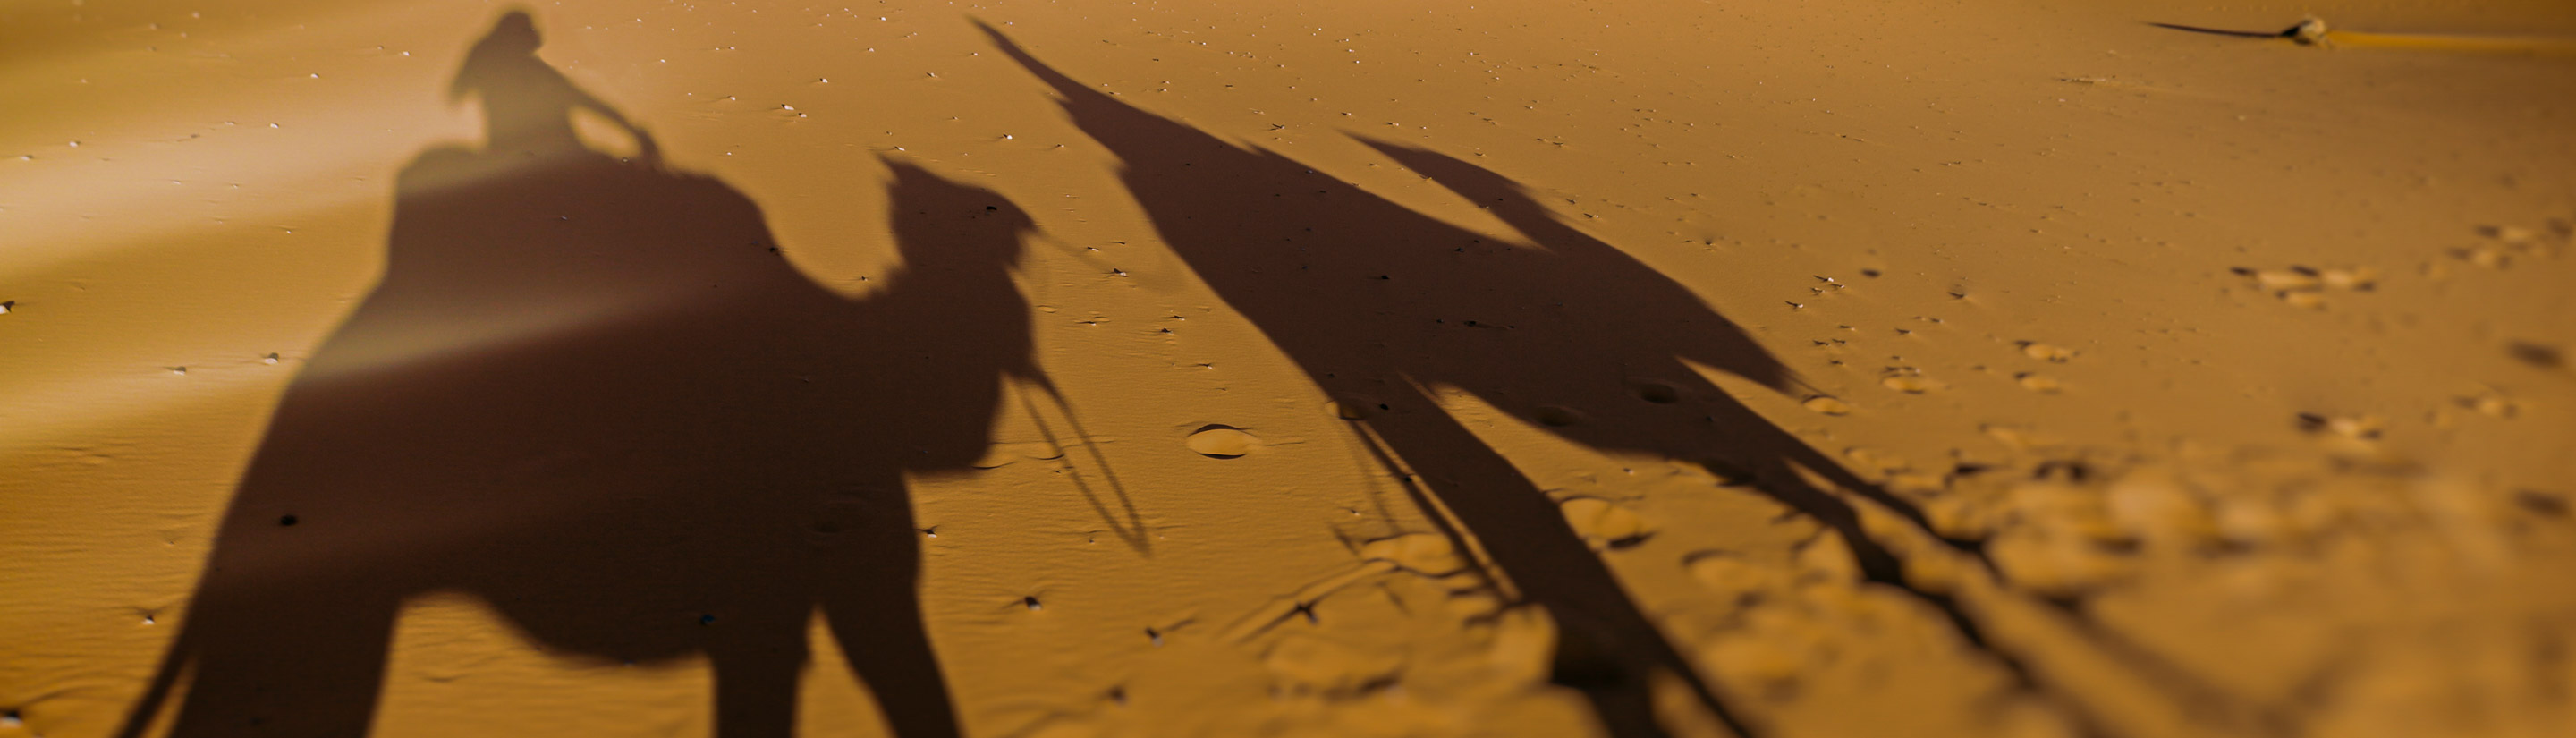 Marokko Reise Schatten von Kamelen